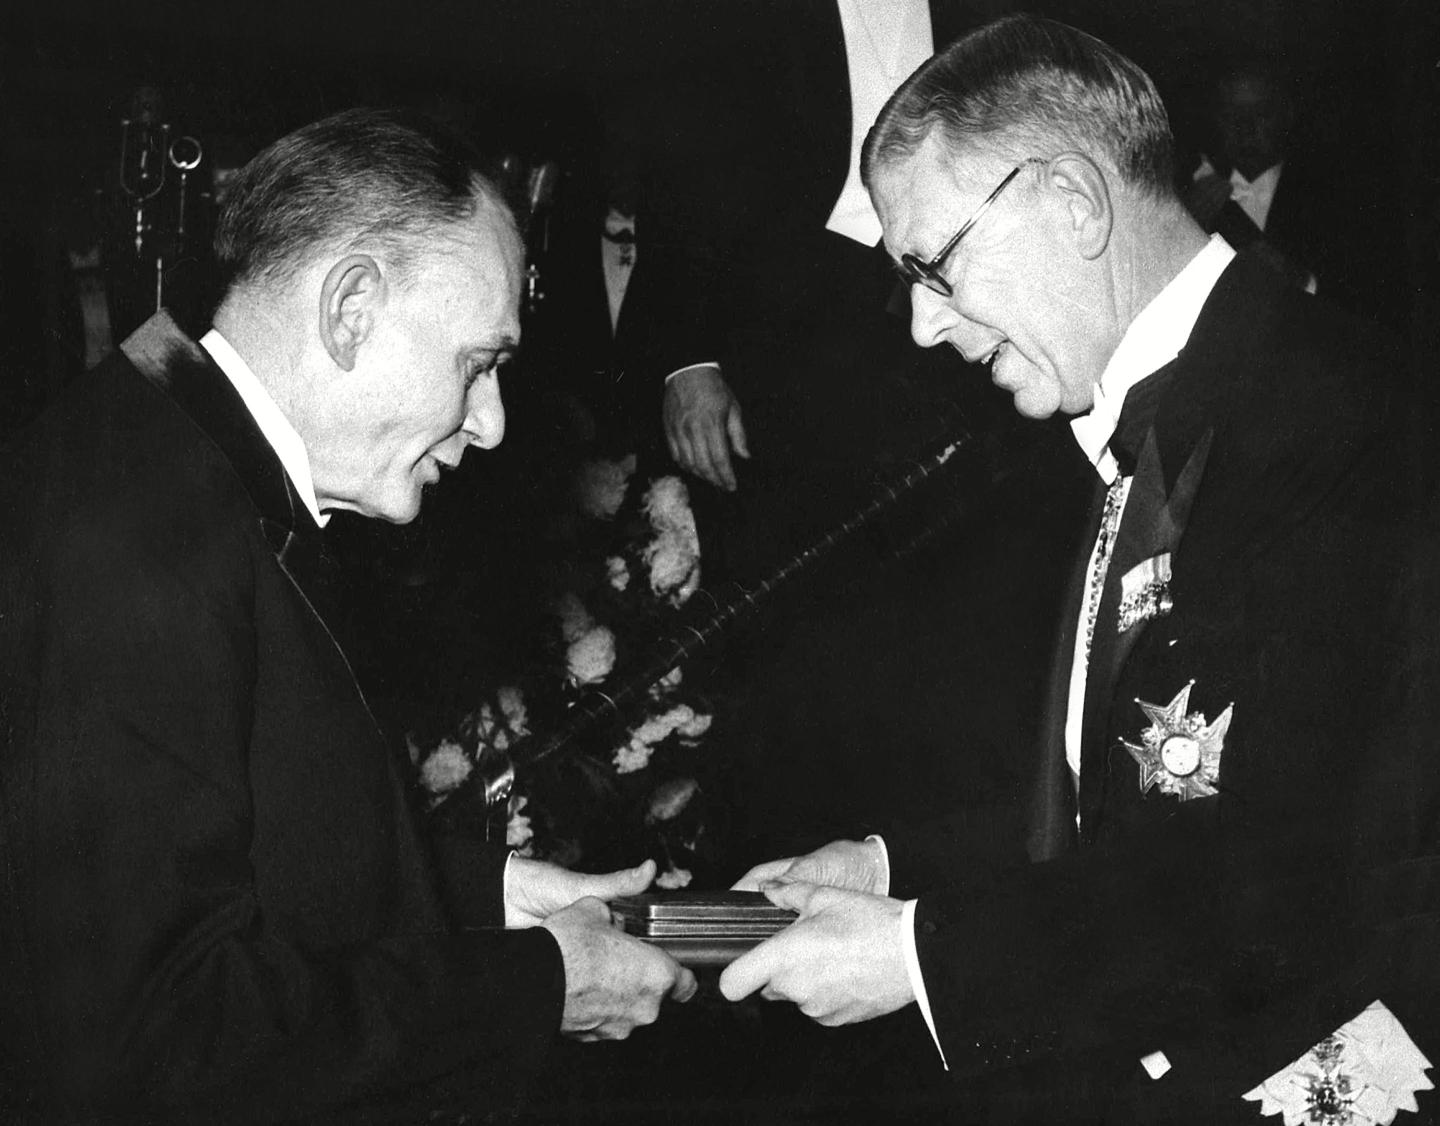 Enders receiving Nobel prize